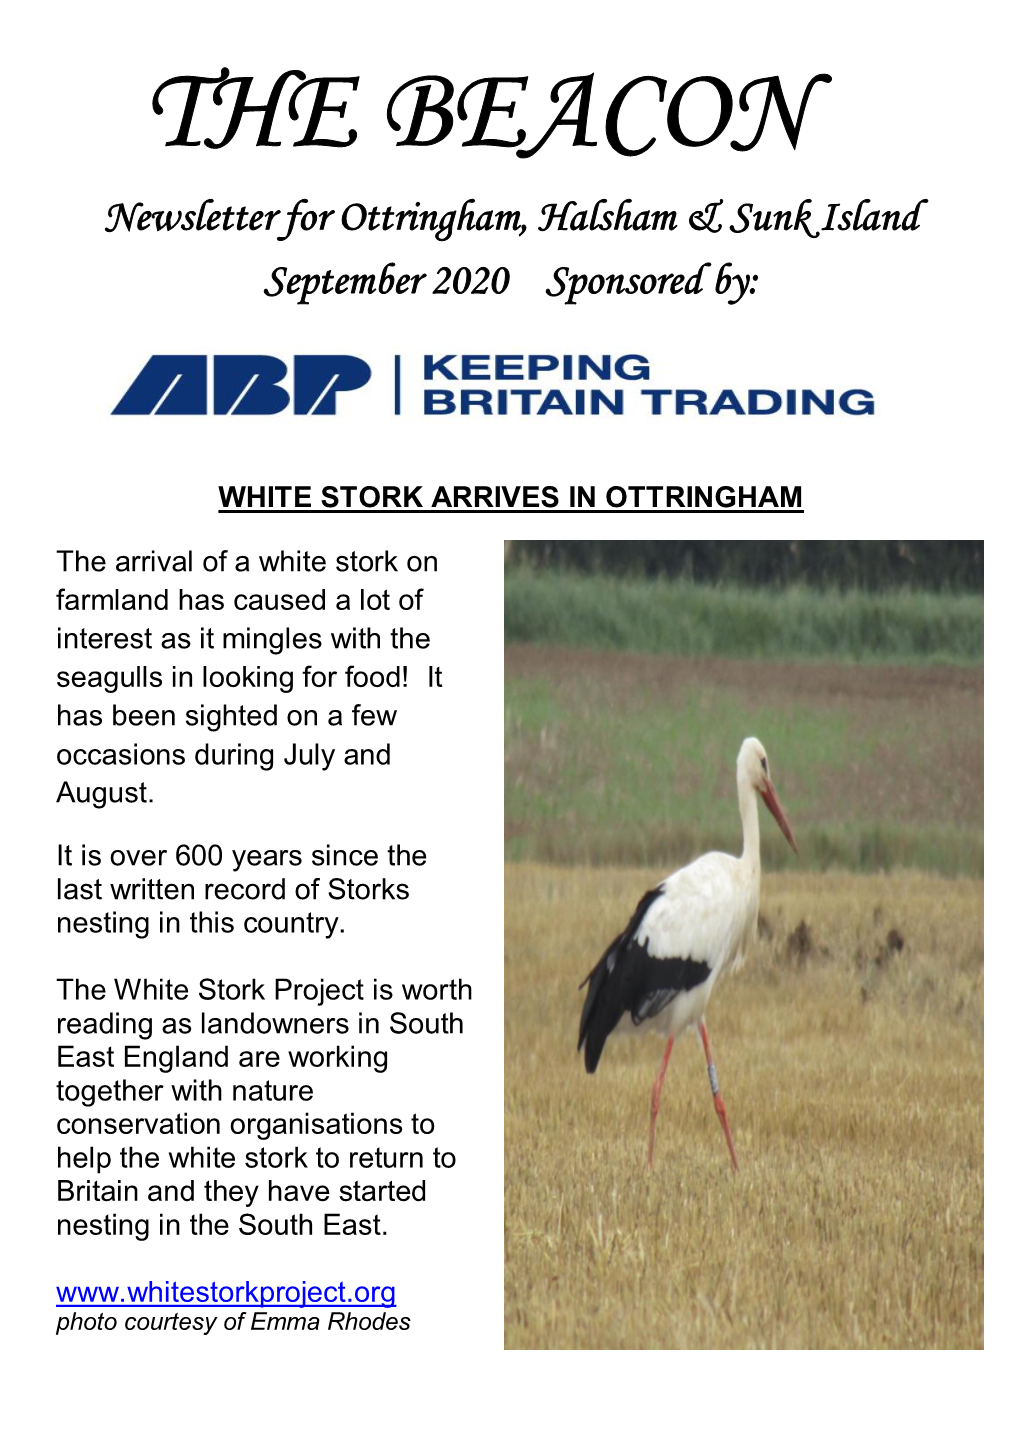 THE BEACON Newsletter for Ottringham, Halsham & Sunk Island September 2020 Sponsored By